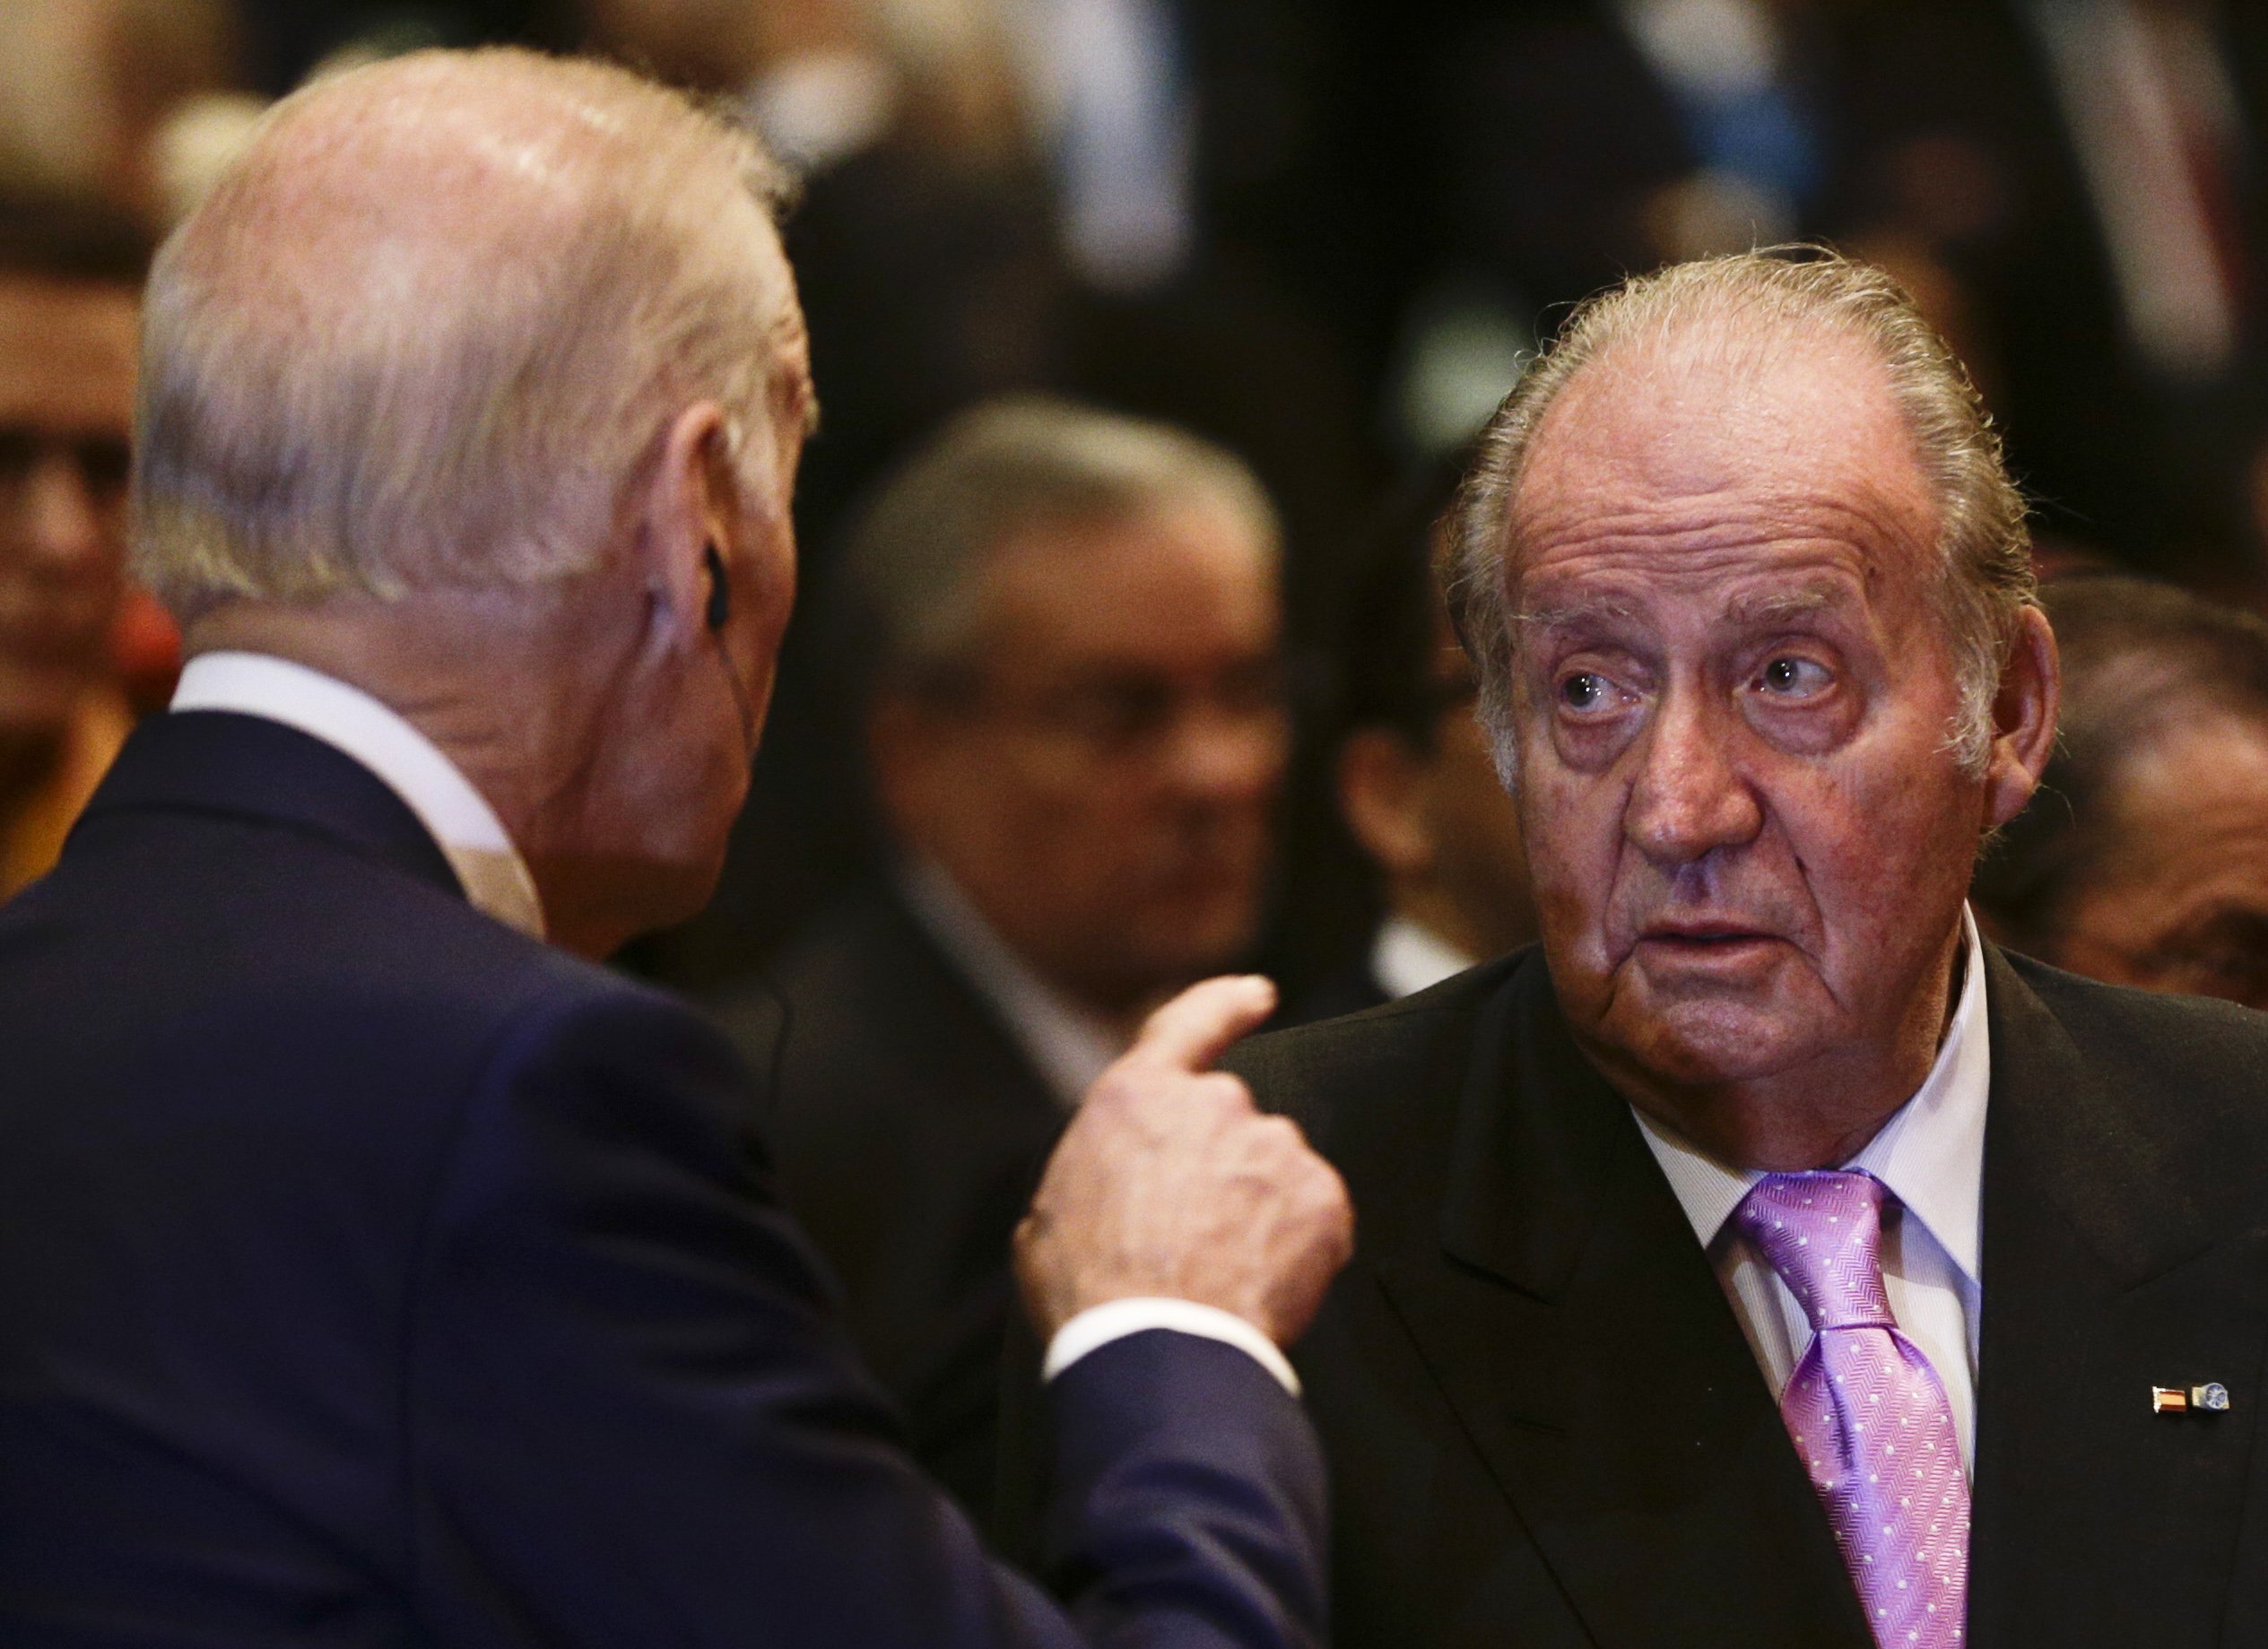 Peñafiel hunde a Juan Carlos: "Dile a Juanito que se vaya a la mierda"